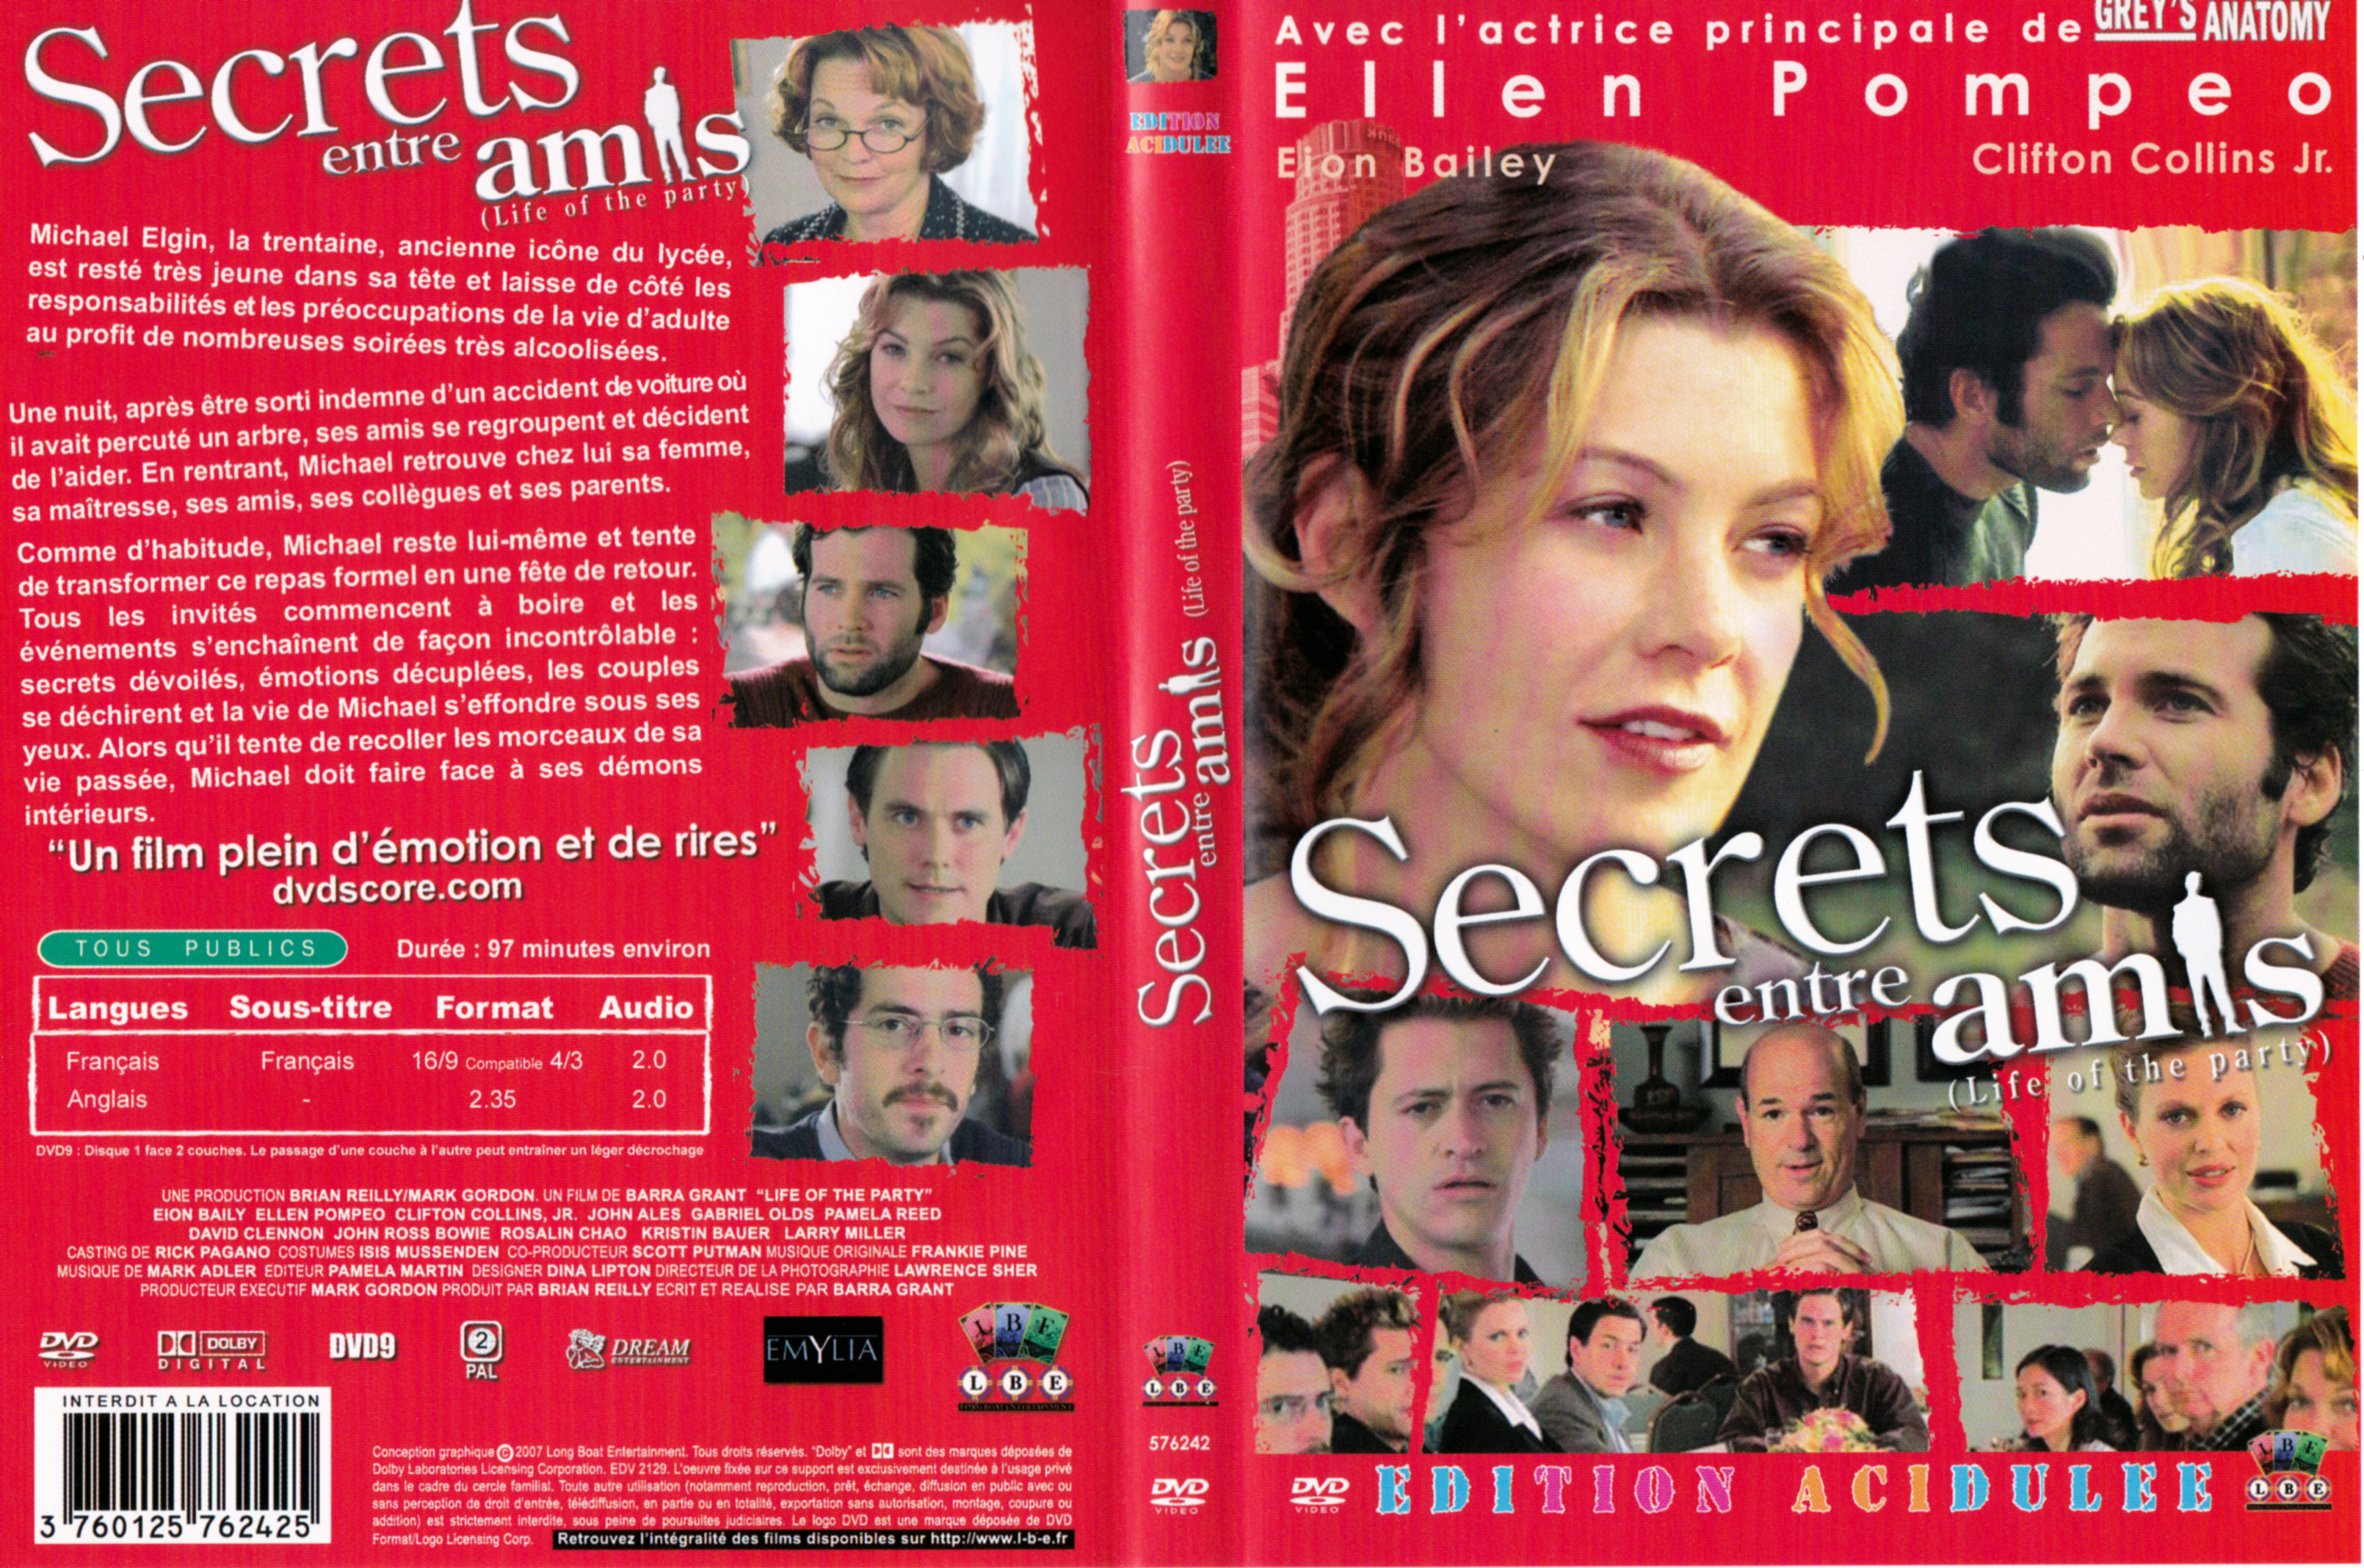 Jaquette DVD Secrets entre amis